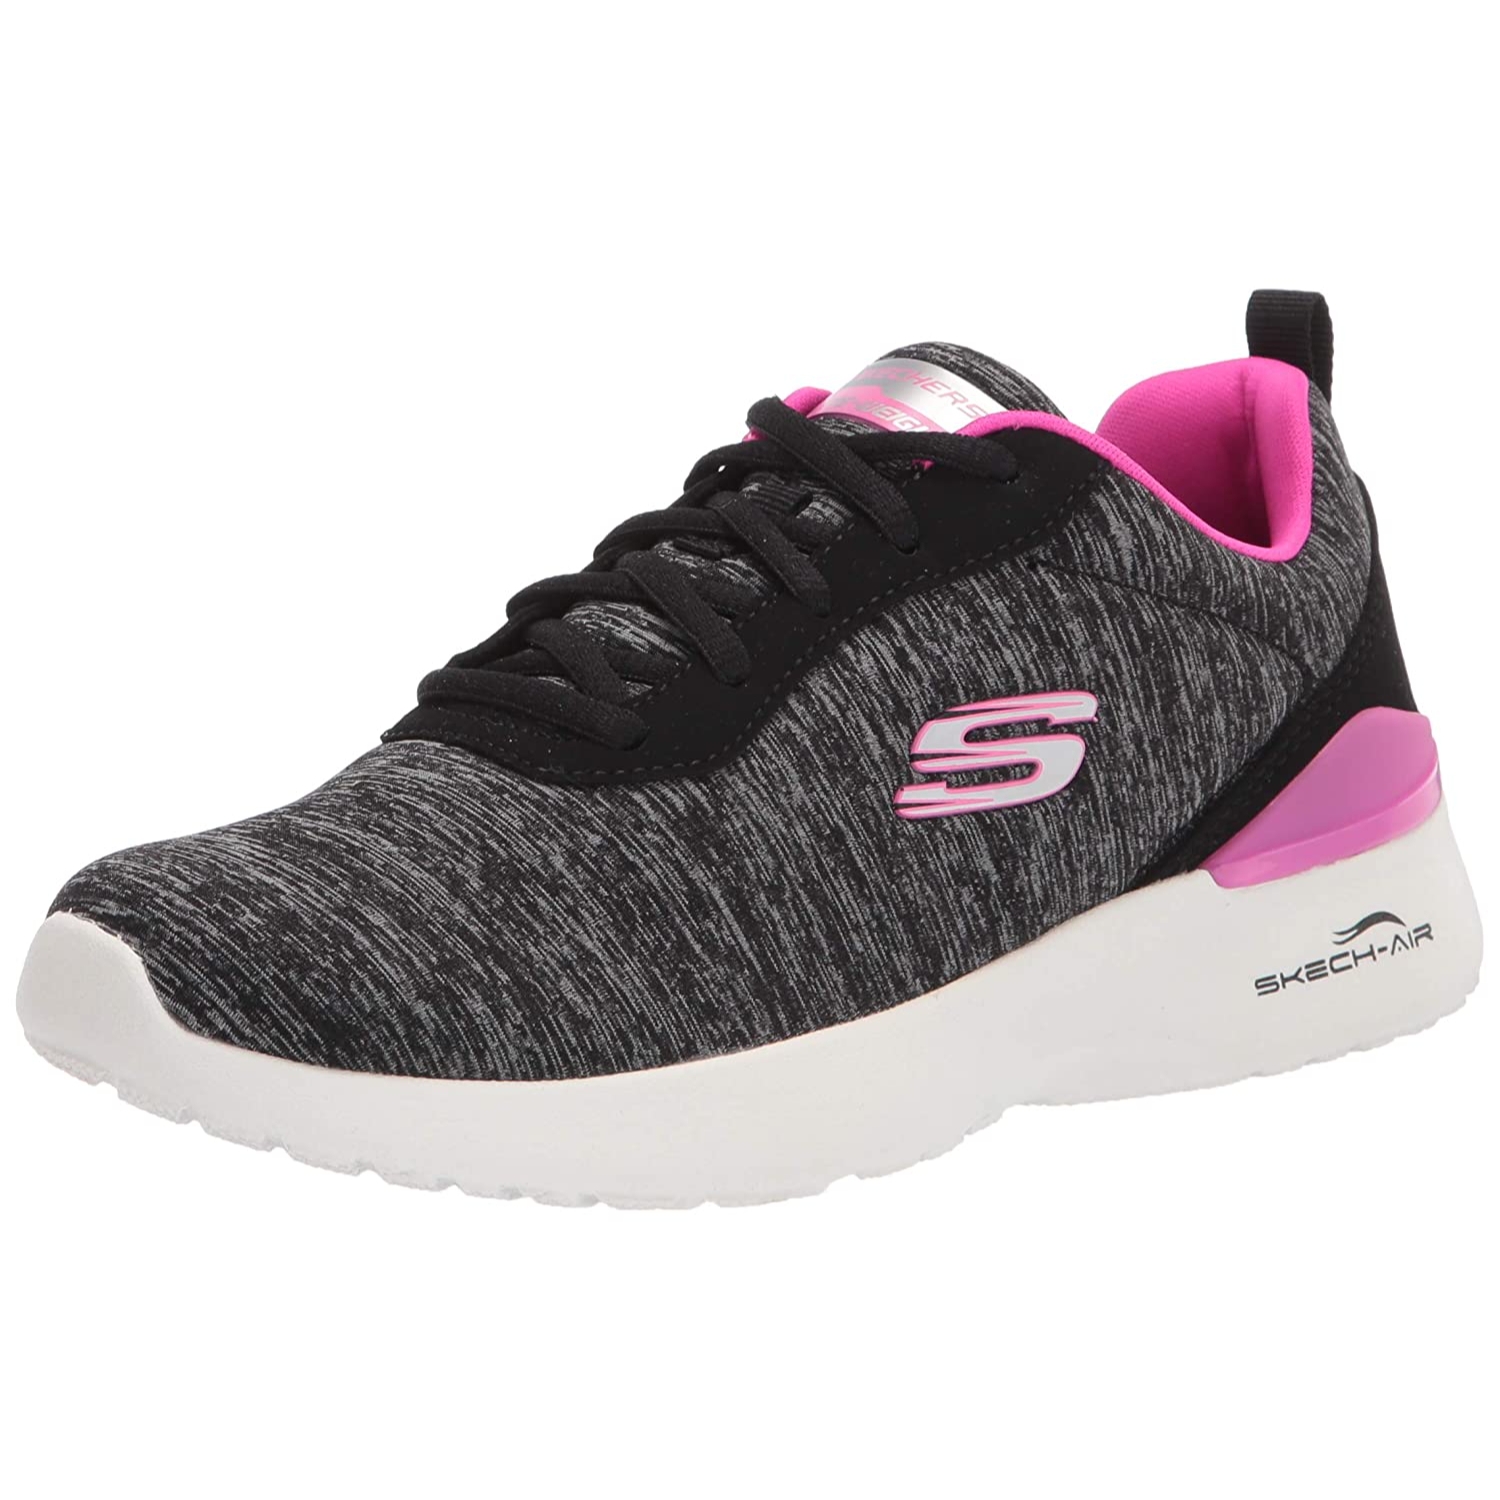 Skechers | Skechers Women's Skech-AIR Dynamight-Paradise Black/HOT Sports Shoe_149344-BKHP